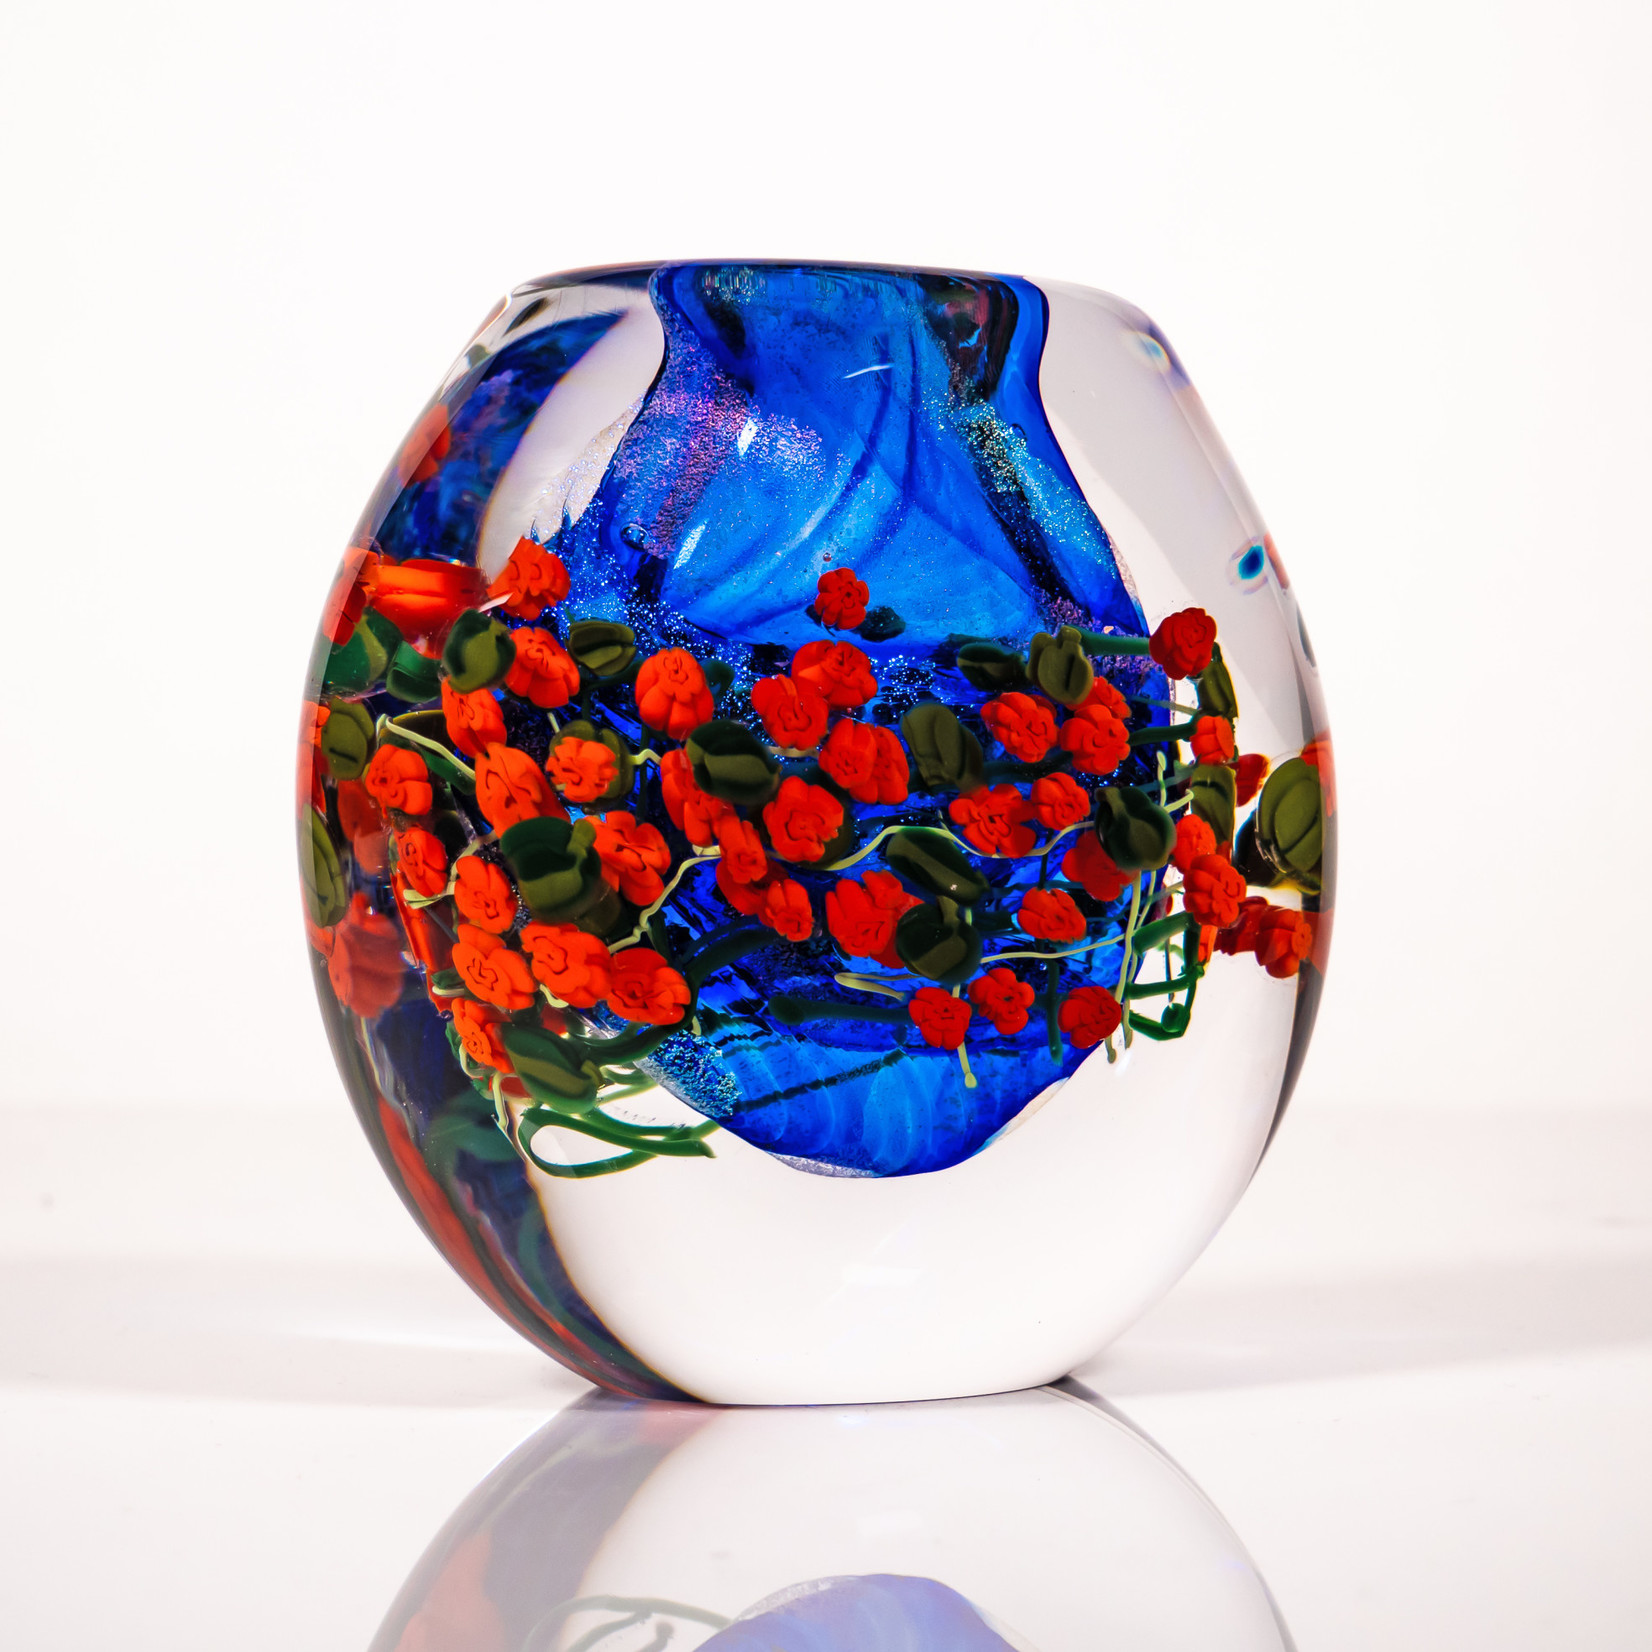 Shawn Messenger Shawn Messenger: Garden Series Cased Vase